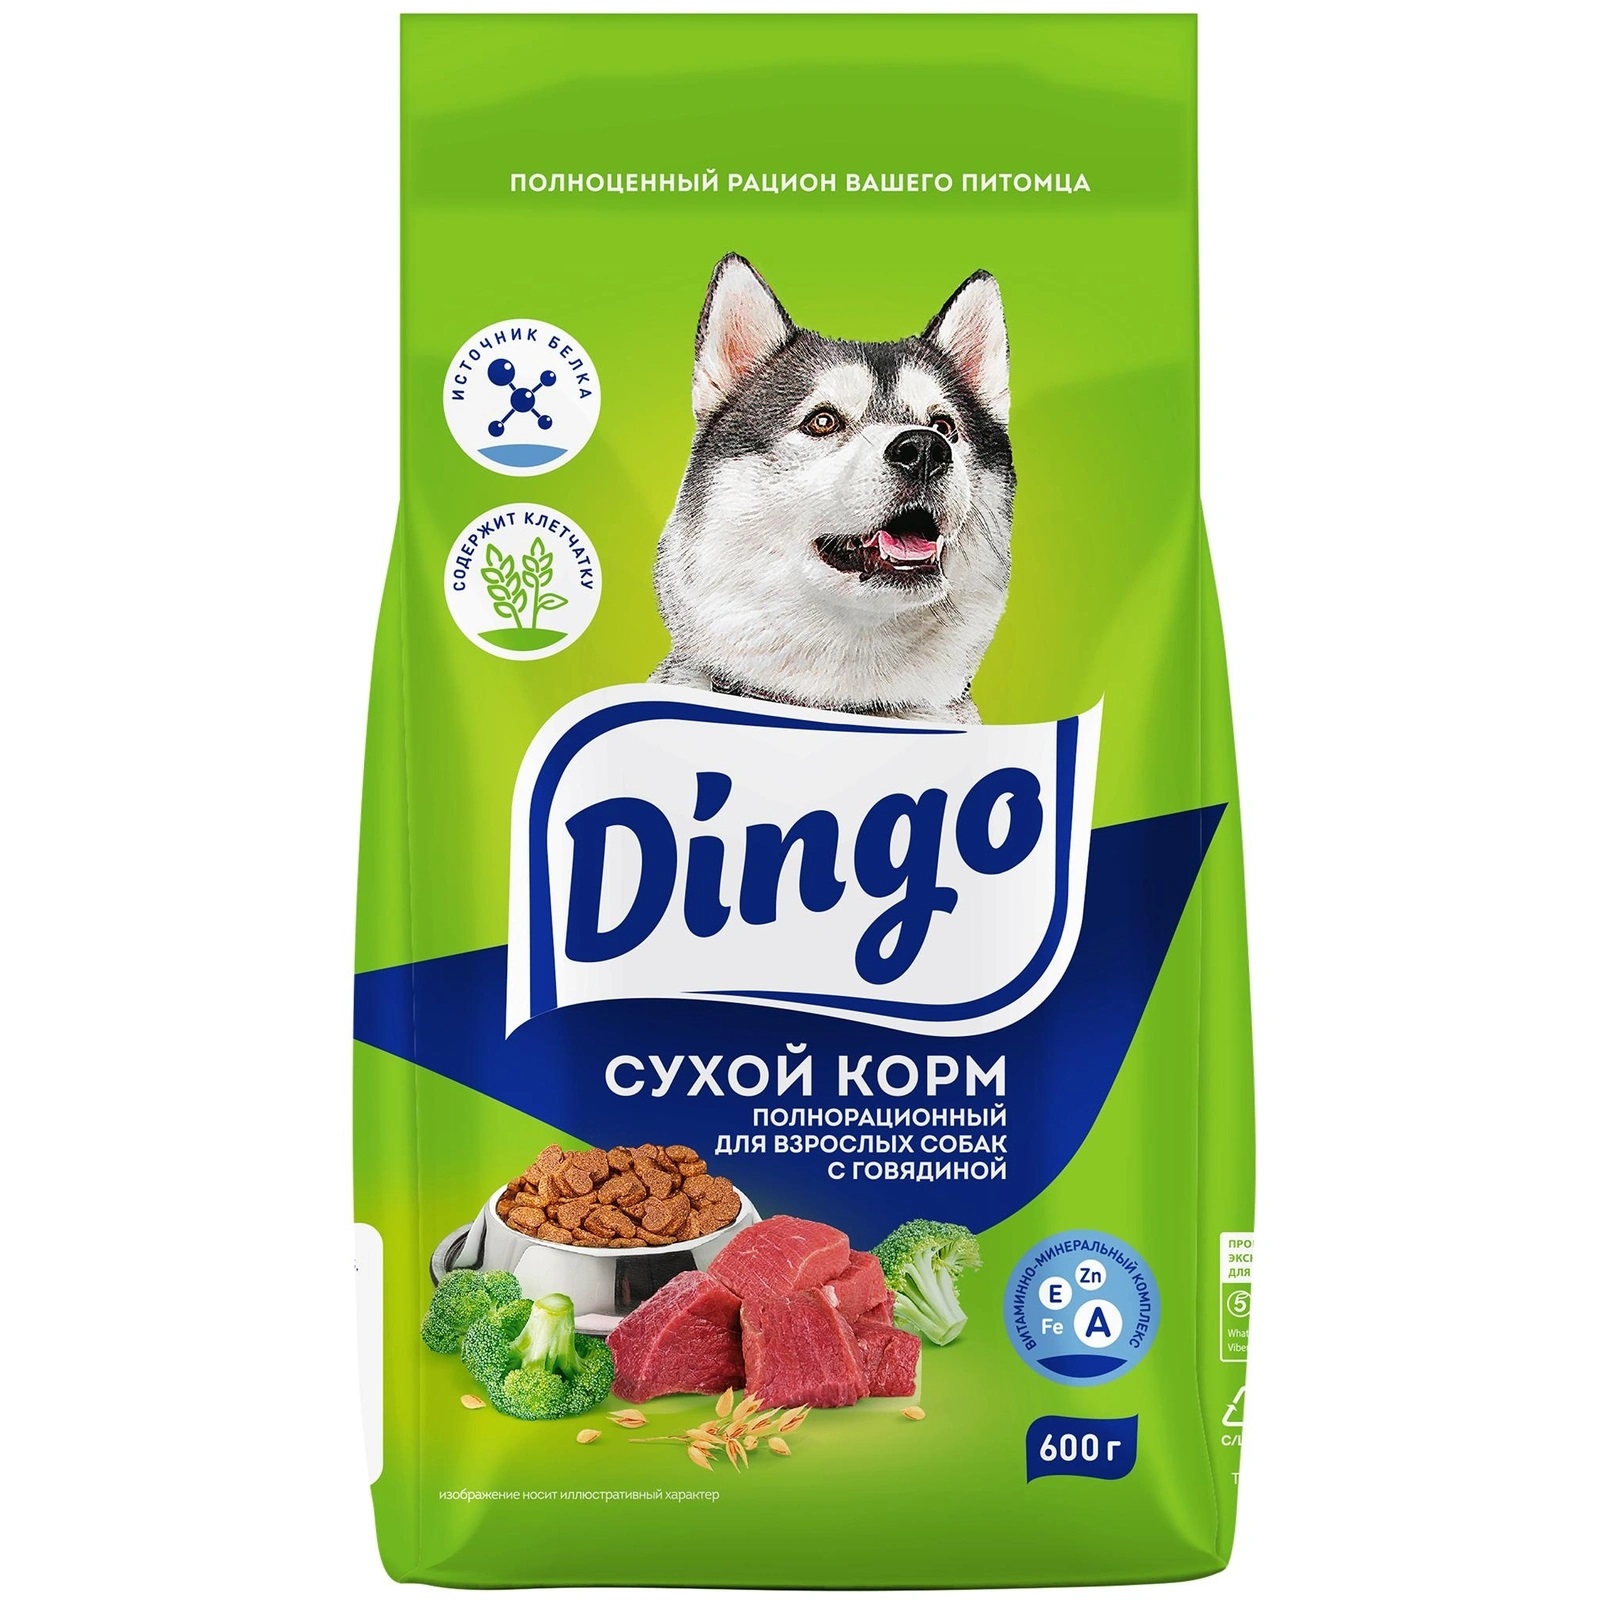 Сухой корм для собак Dingo с говядиной, 600 г